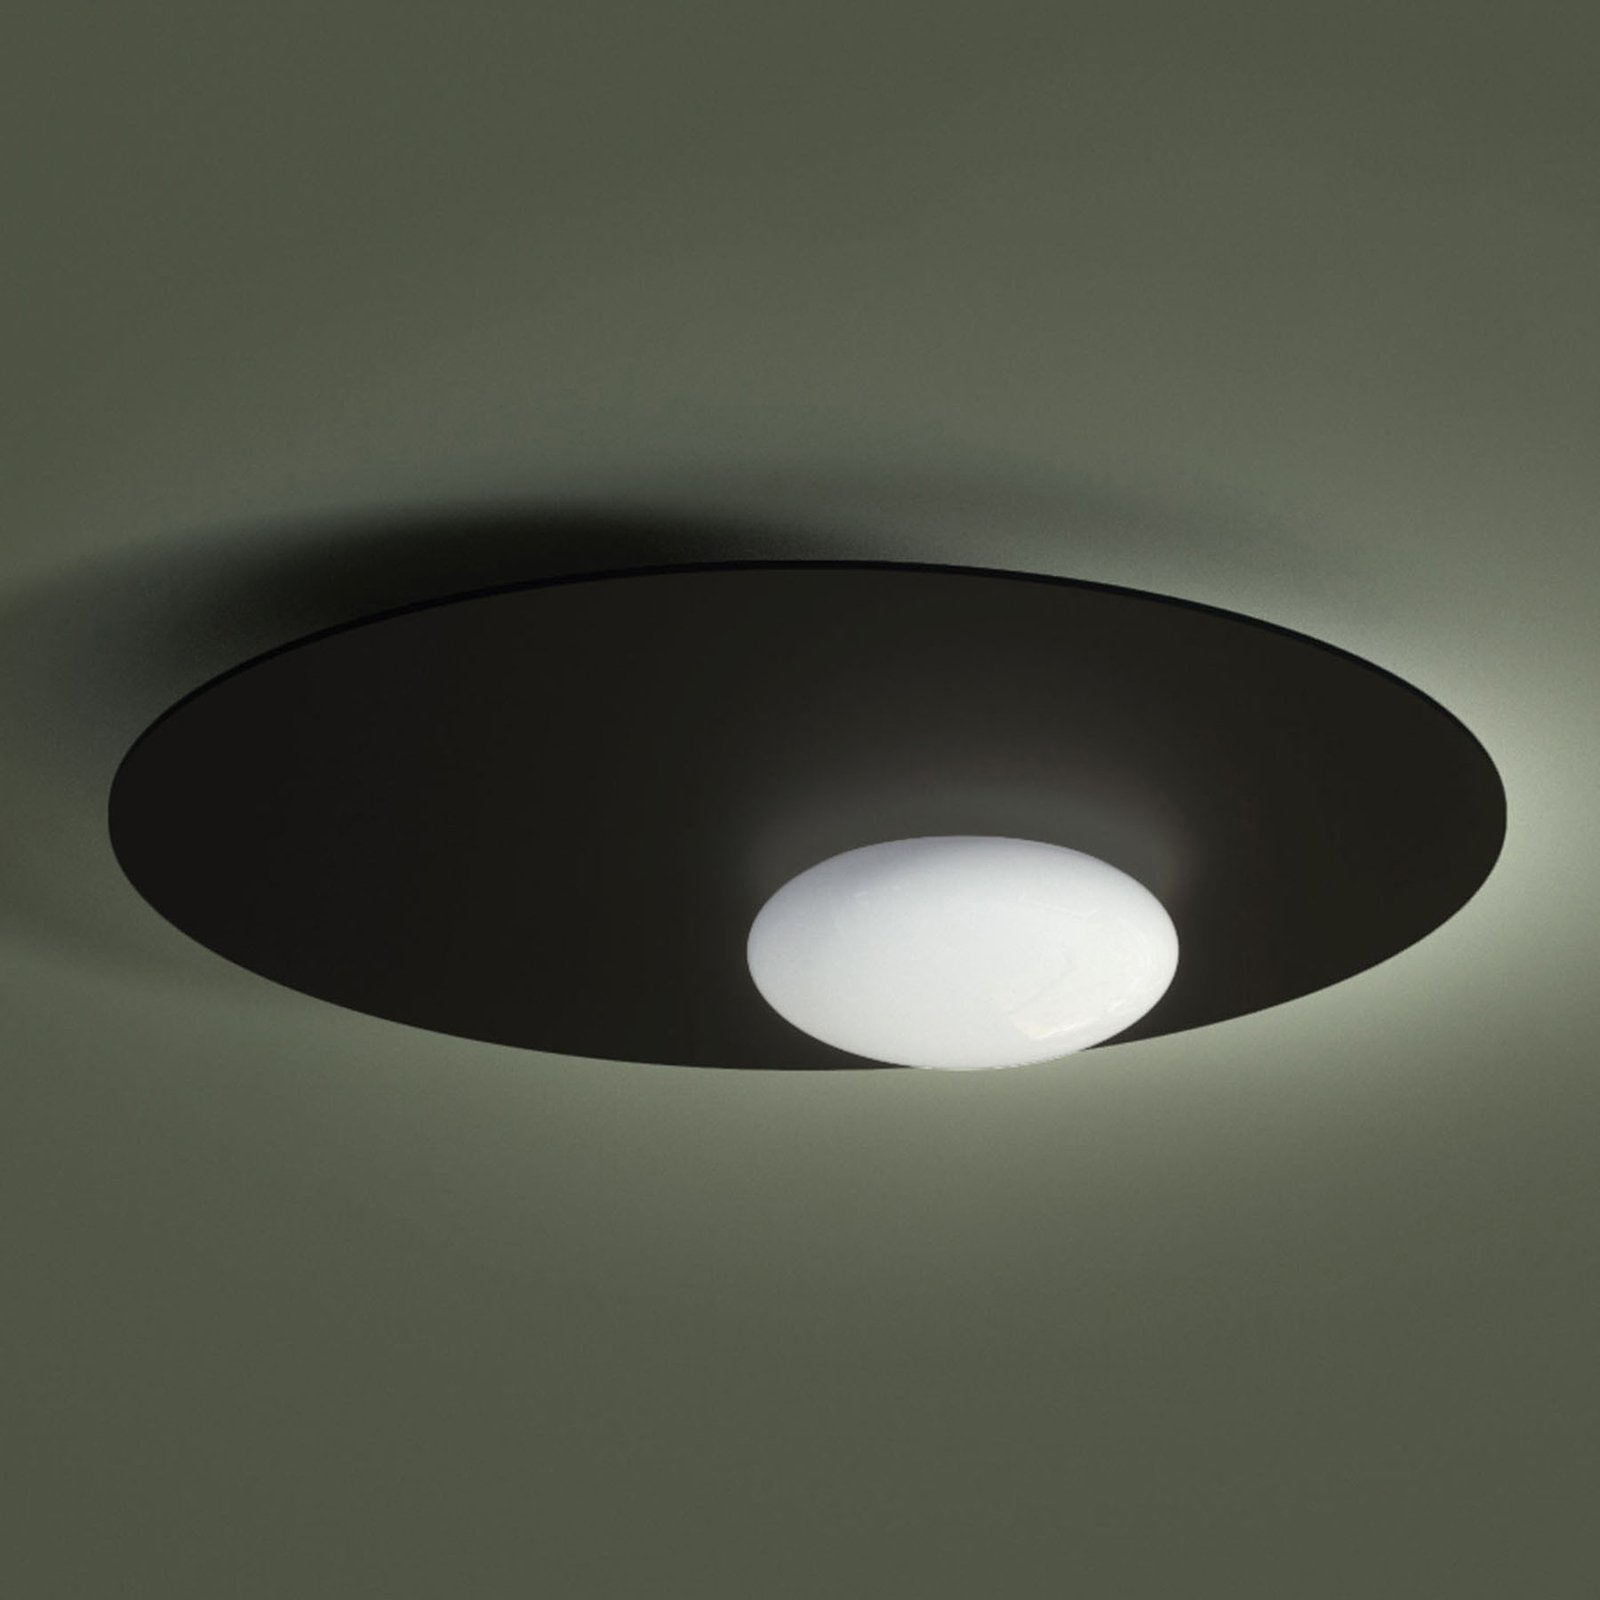 Axolight Kwic LED-kattovalaisin, musta, Ø 48 cm